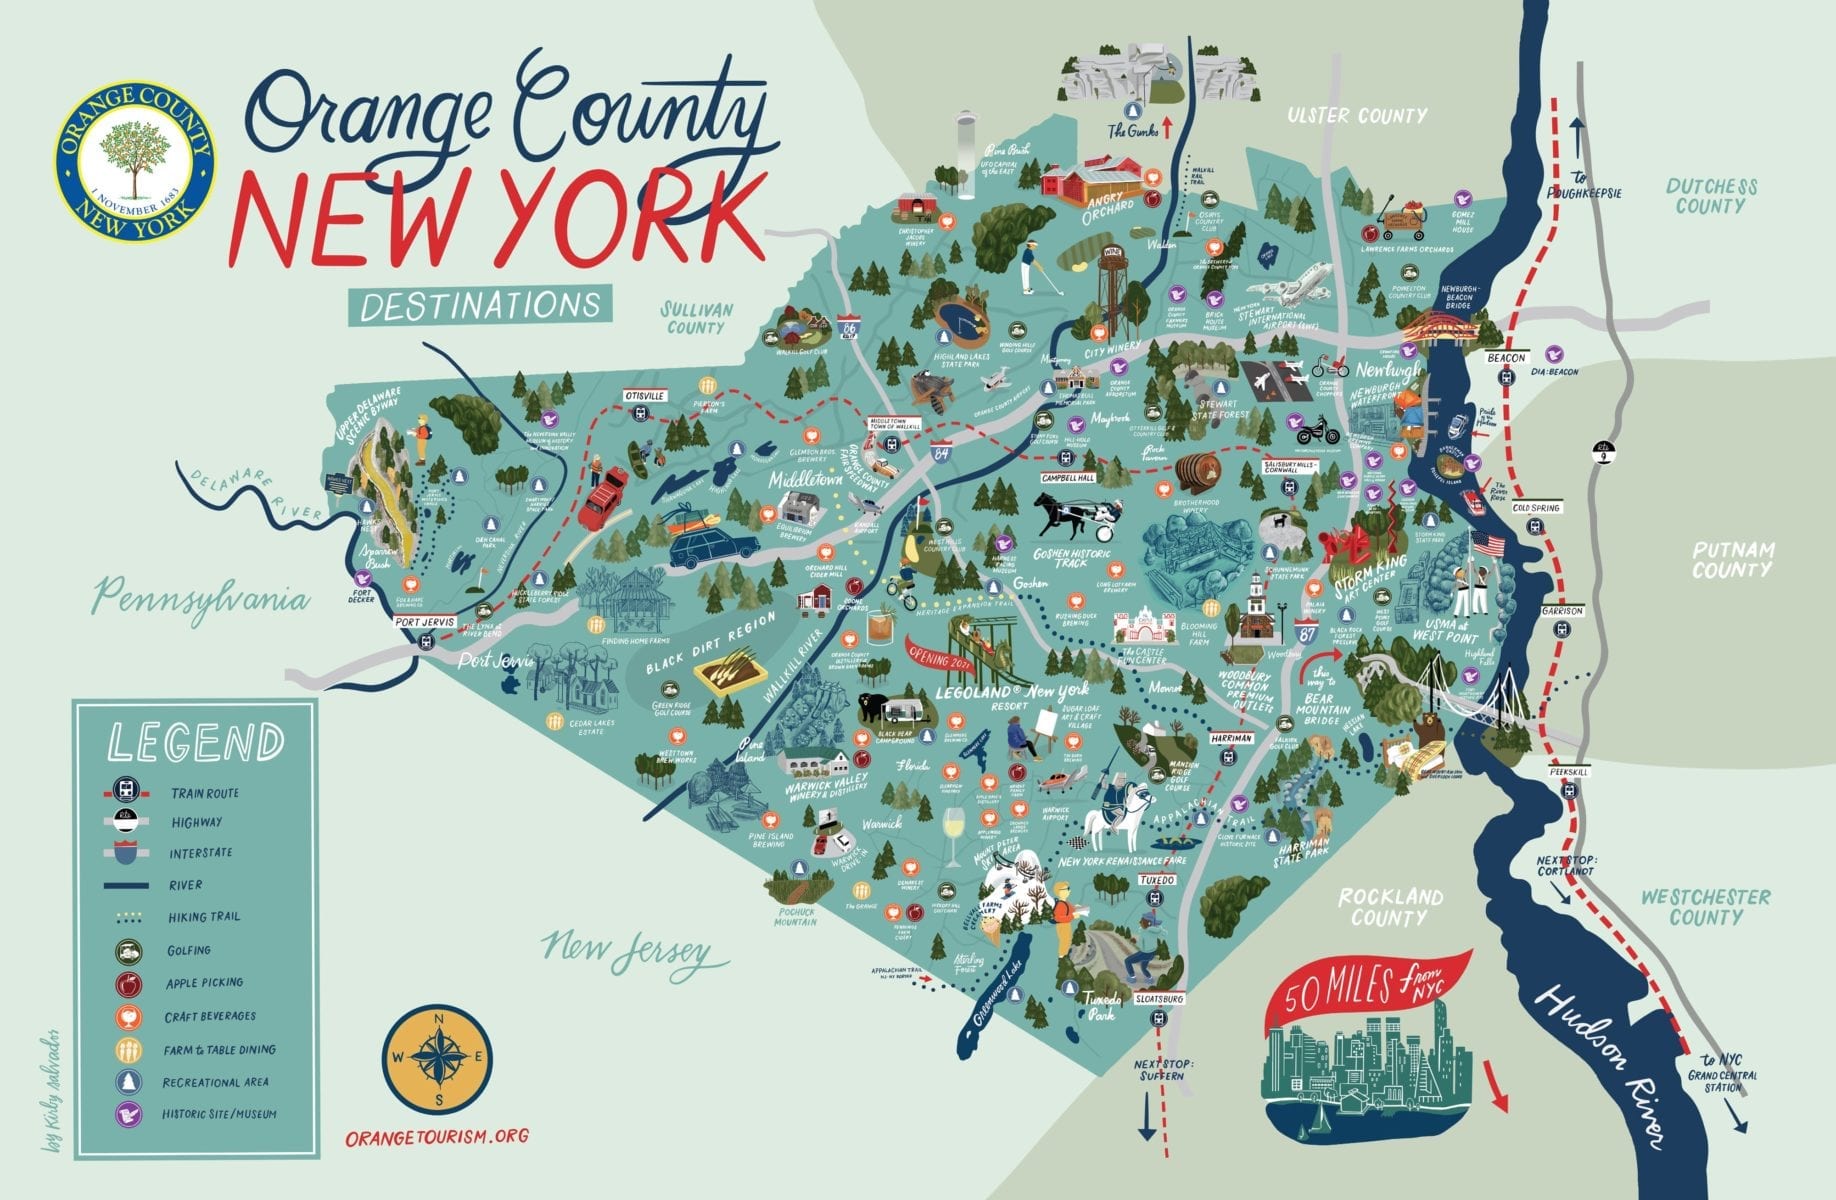 orange county tourism development council